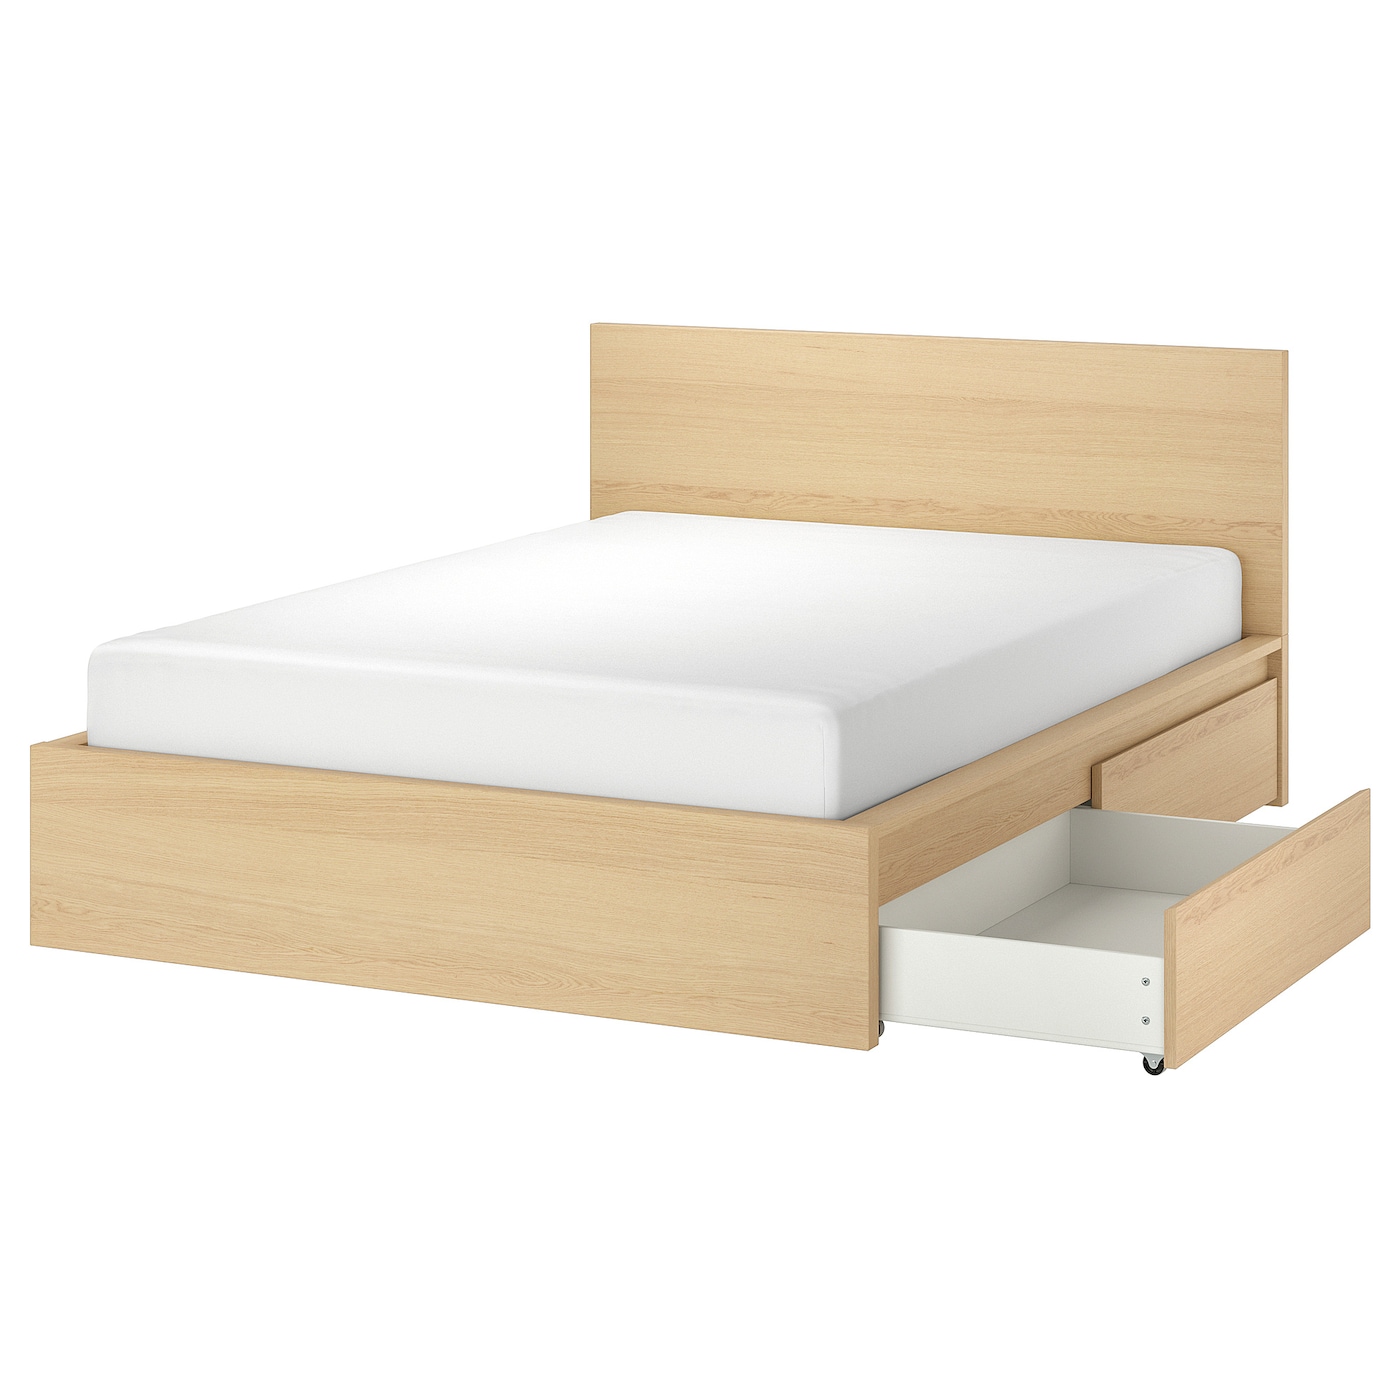 Каркас кровати с 2 ящиками для хранения - IKEA MALM, 200х180 см, под беленый дуб, МАЛЬМ ИКЕА